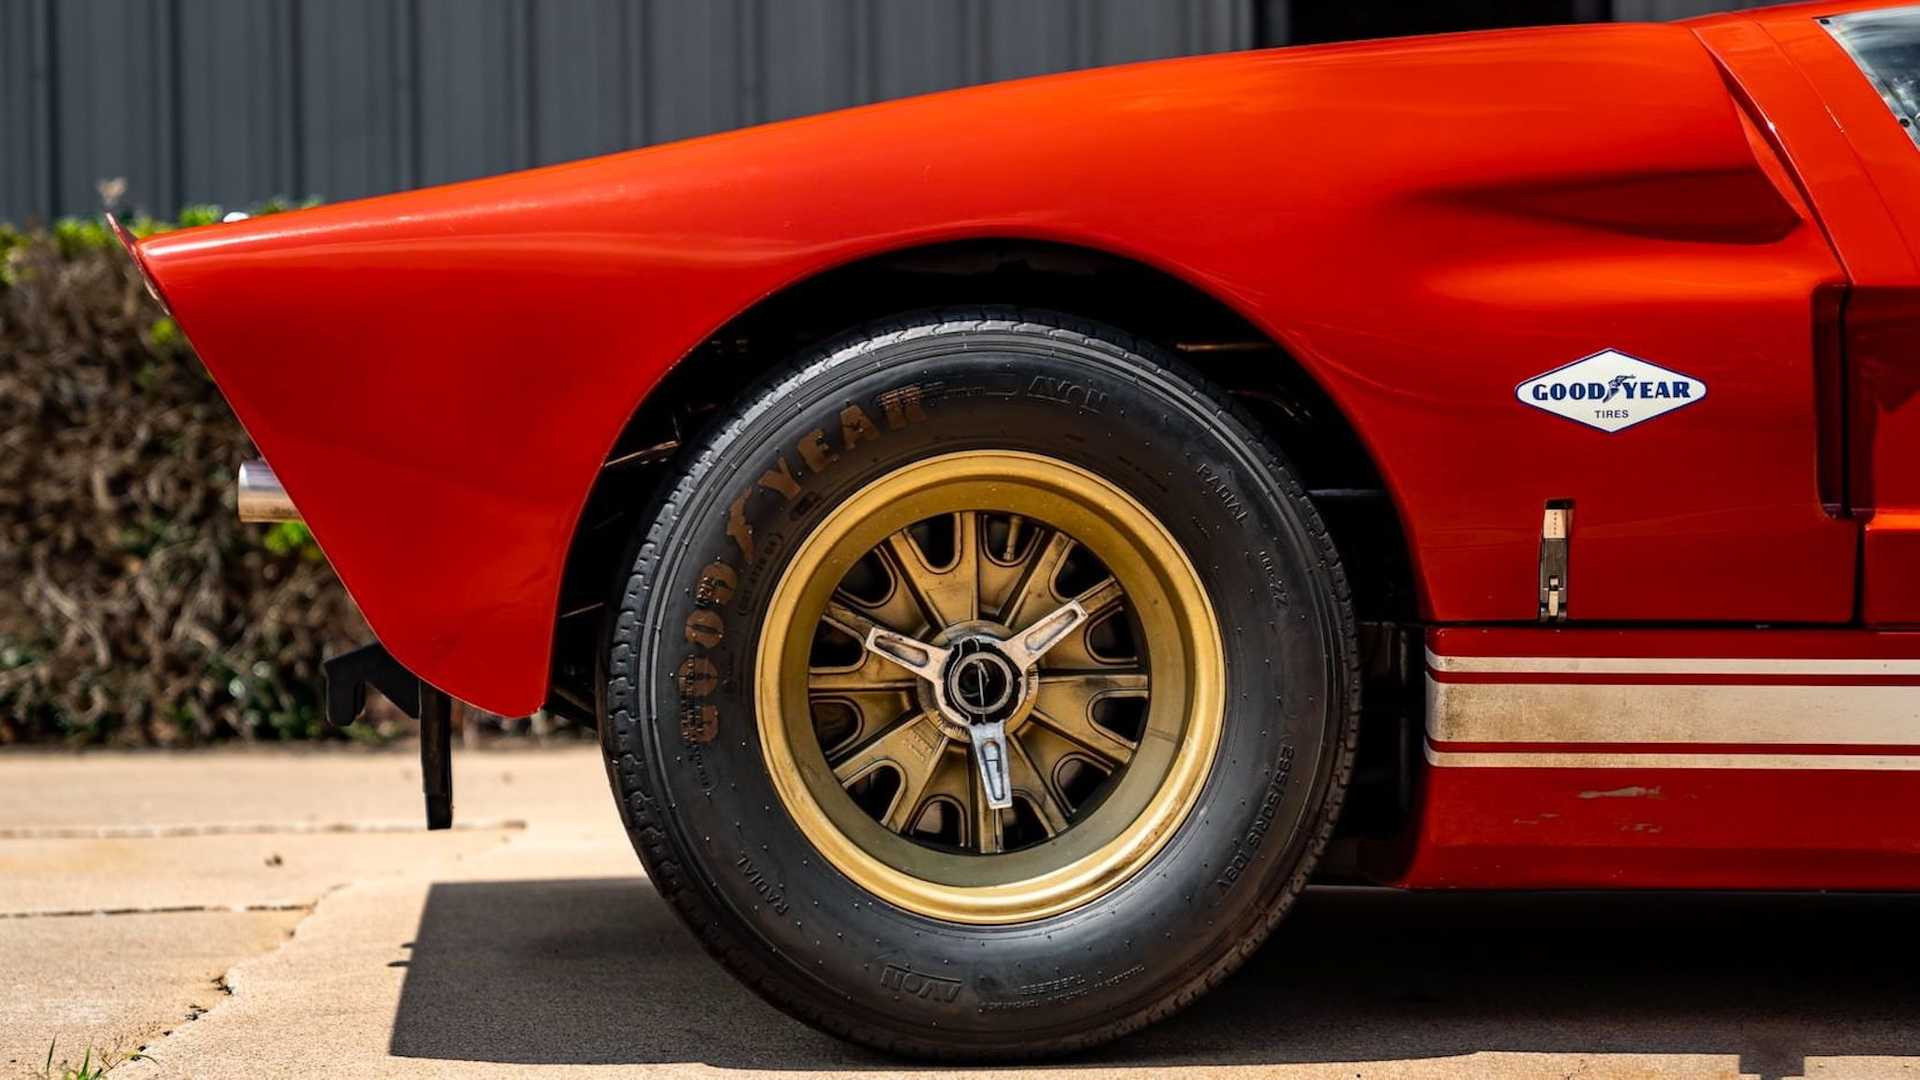 GT40 tuyệt đẹp với lớp sơn ngoại thất màu cam đỏ, mâm xe màu vàng